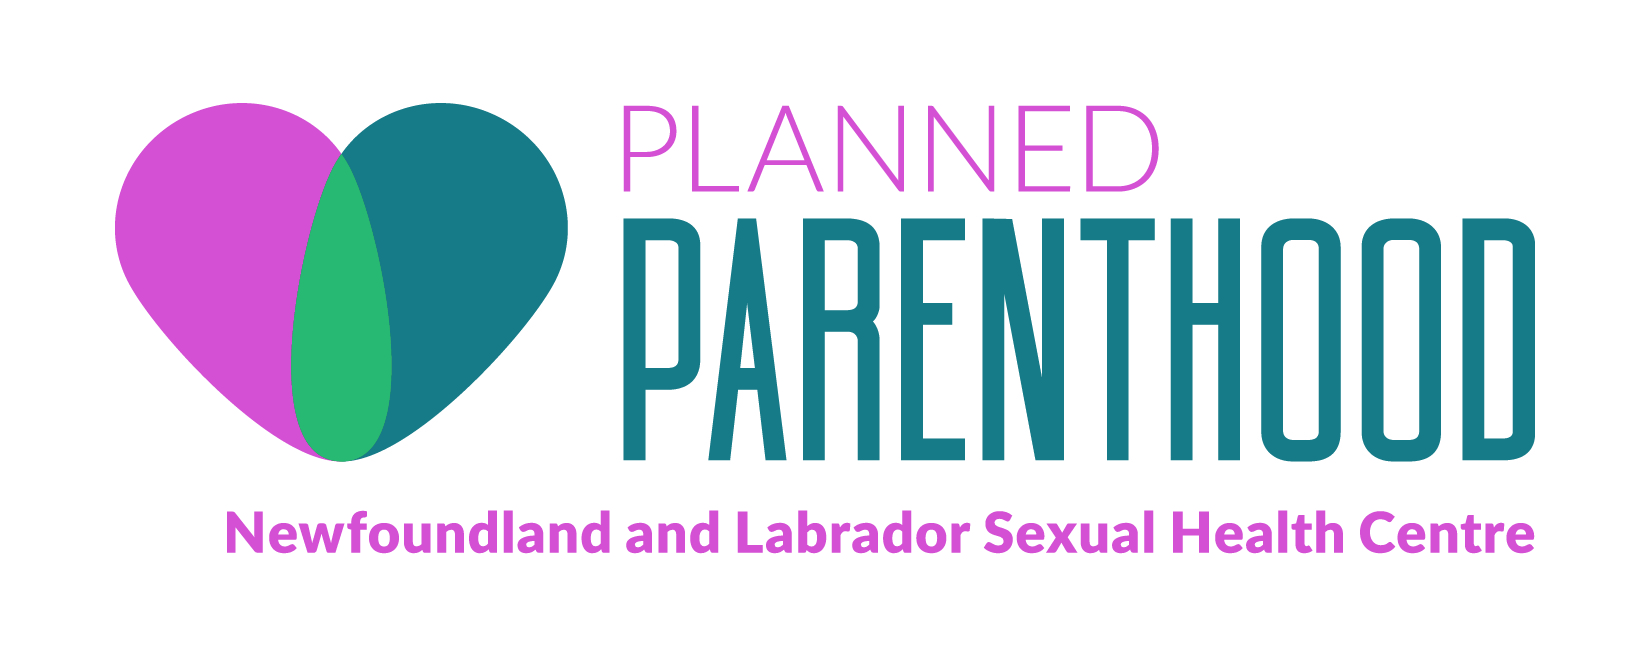 Planned Parenthood Newfoundland and Labrador Sexual Health Centre logo